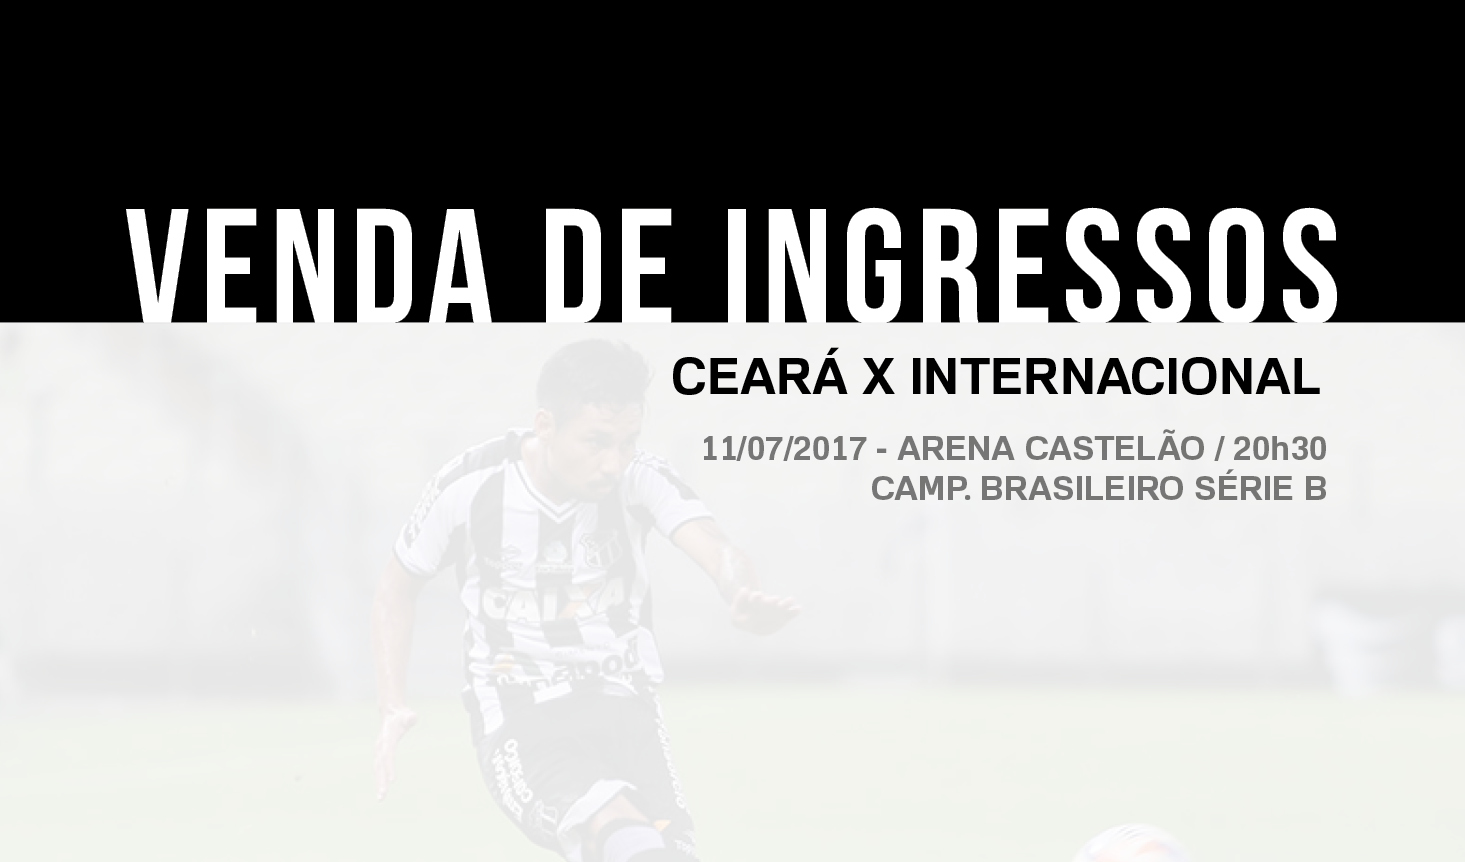 Ceará x Internacional: Venda de ingressos inicia nessa quinta-feira em todas as Lojas Oficiais